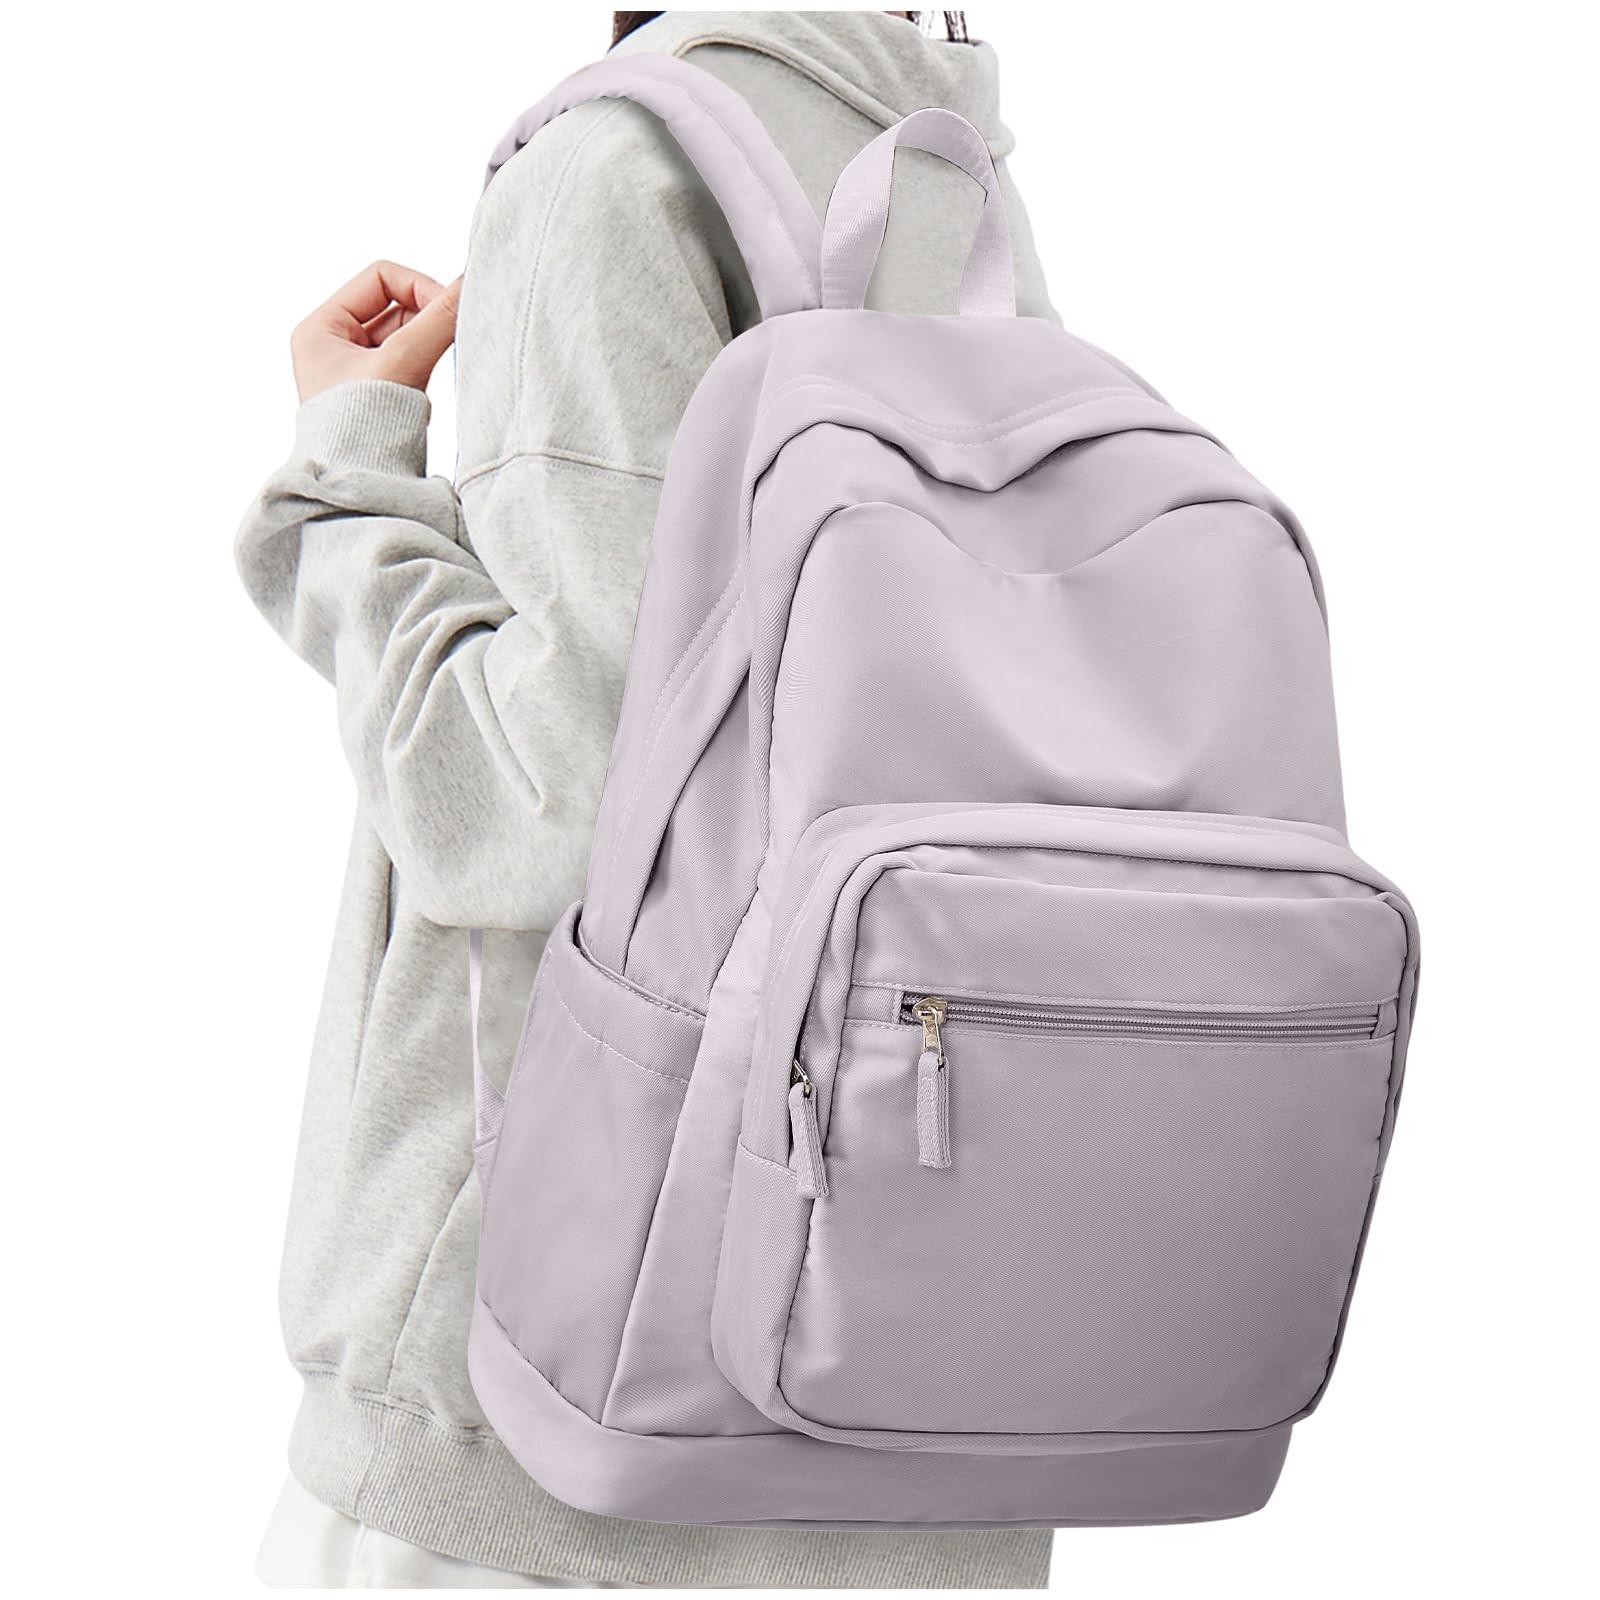 Only-bags.store Rucksack Schule Teenager, Schultasche Laptop-Rucksack  